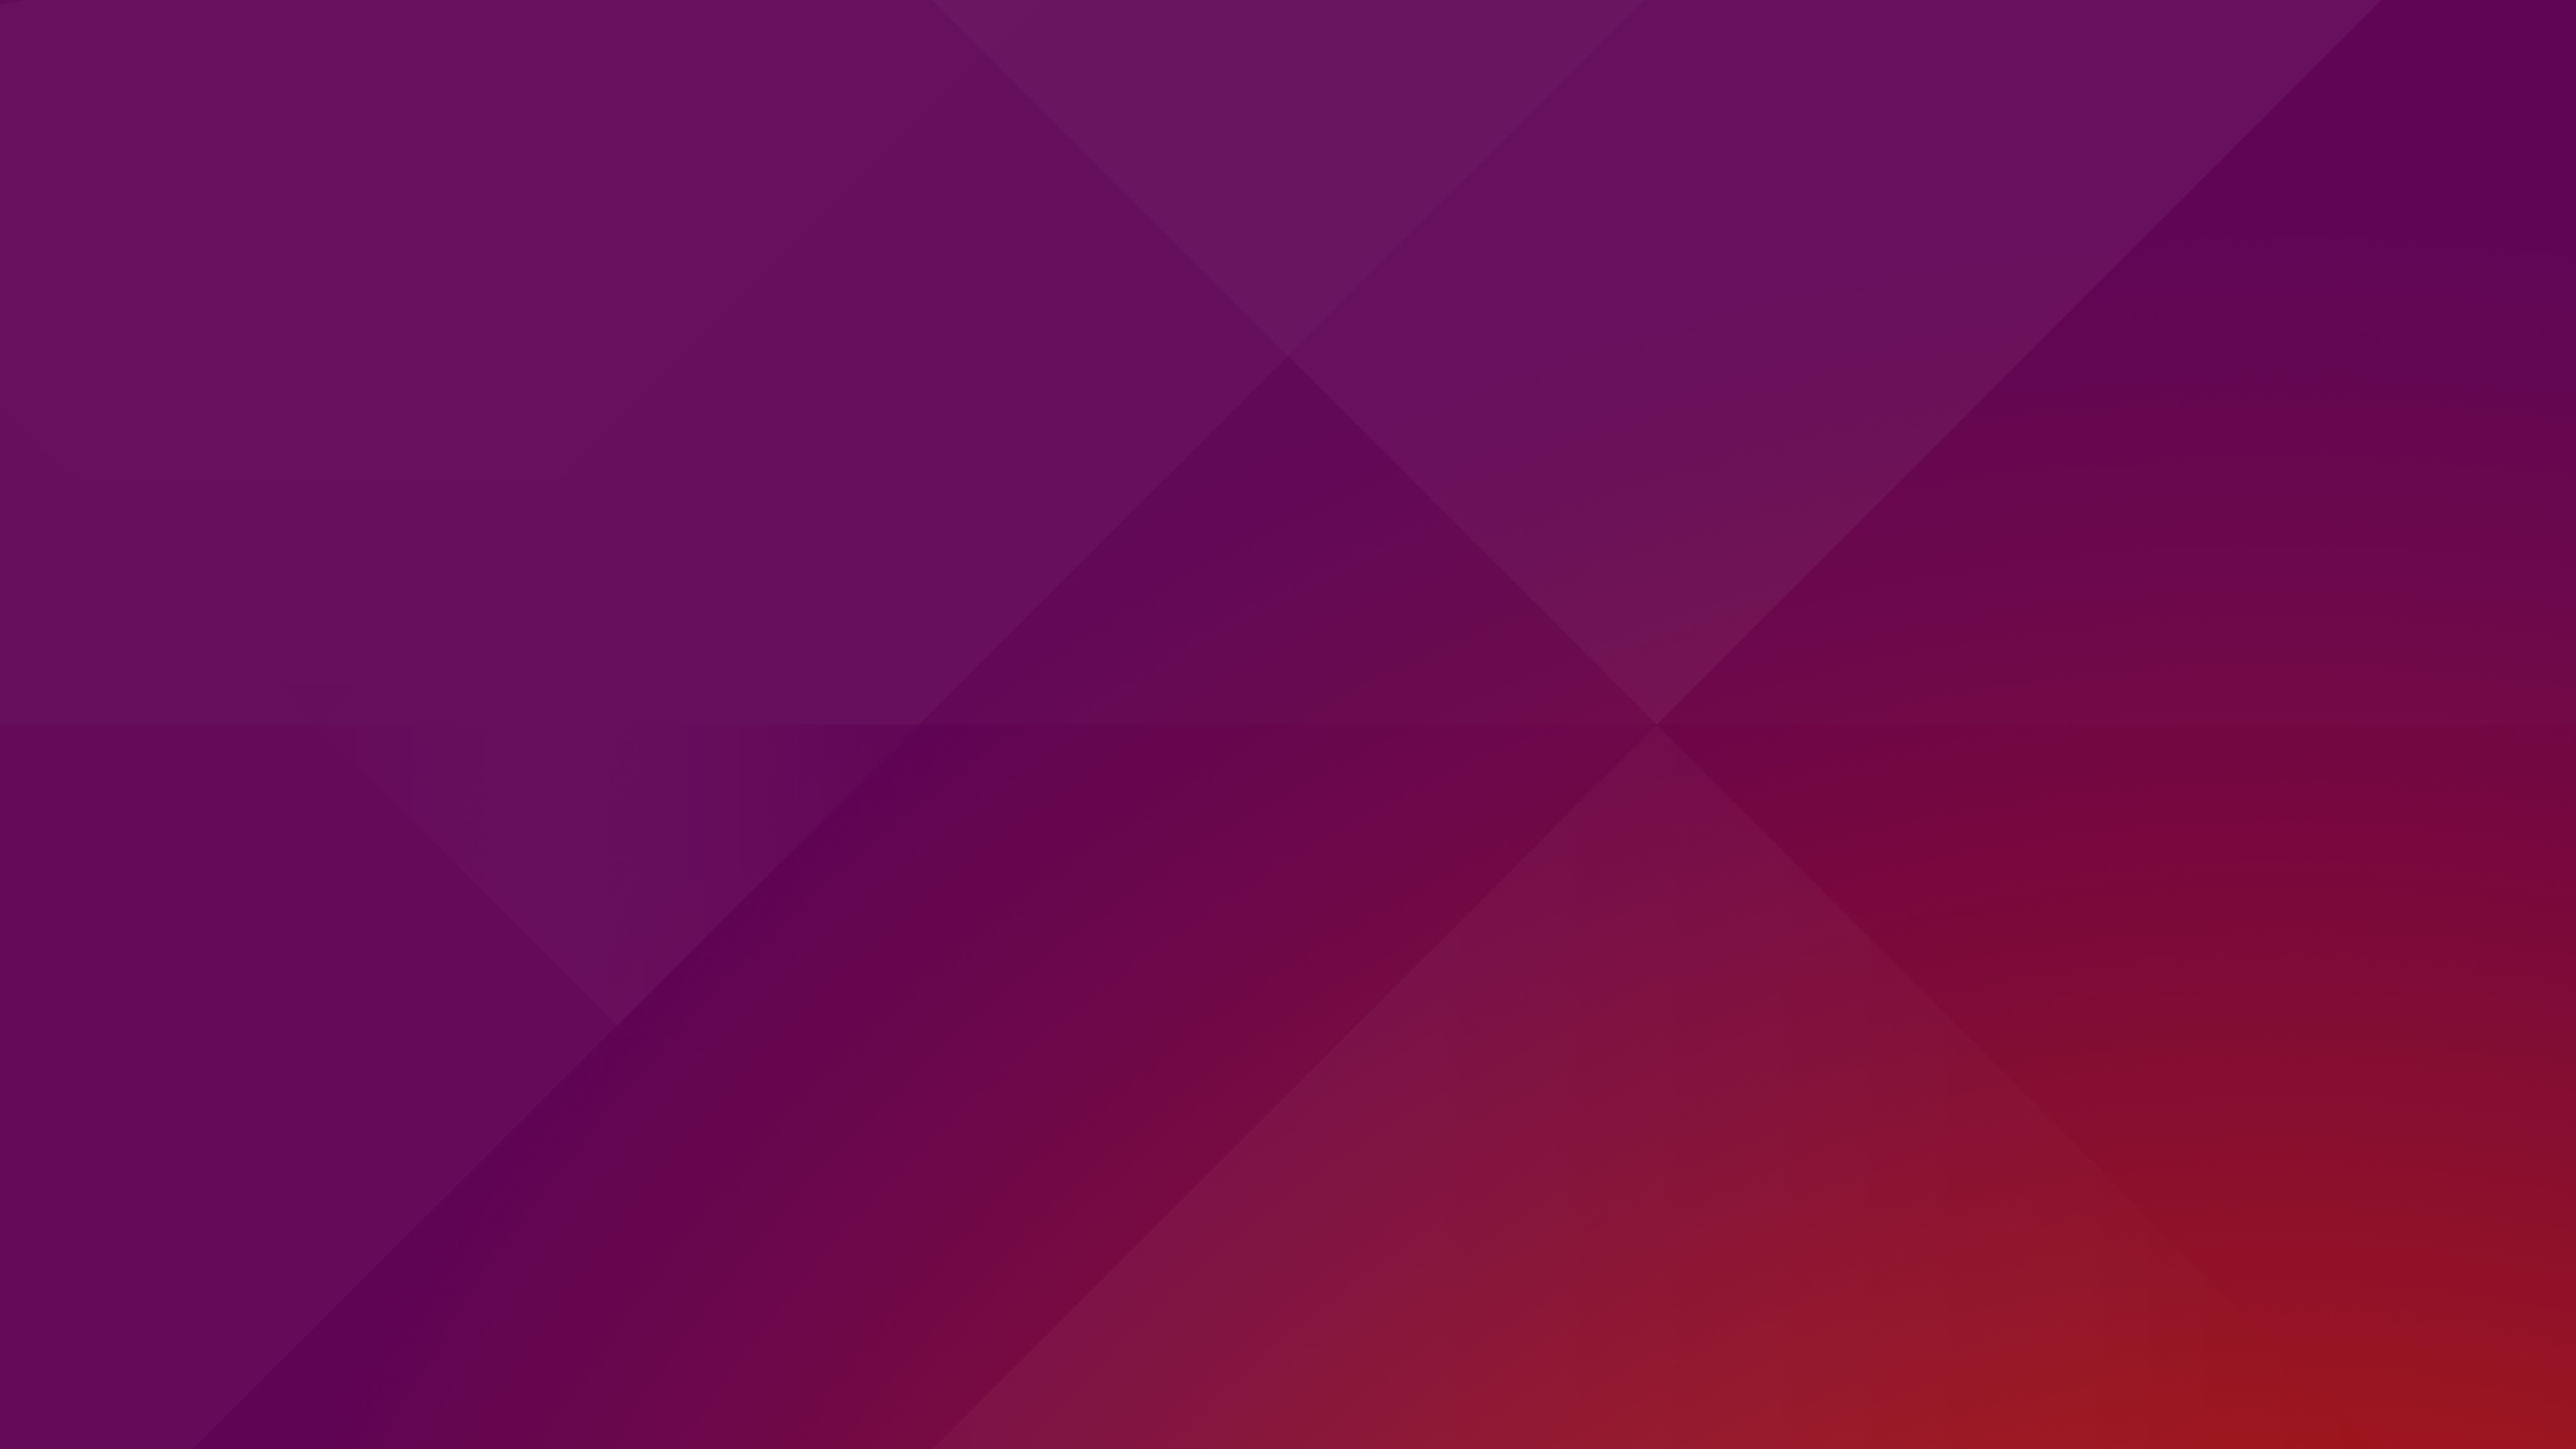 This is the Default Desktop Wallpaper for Ubuntu 1610 4096x2304